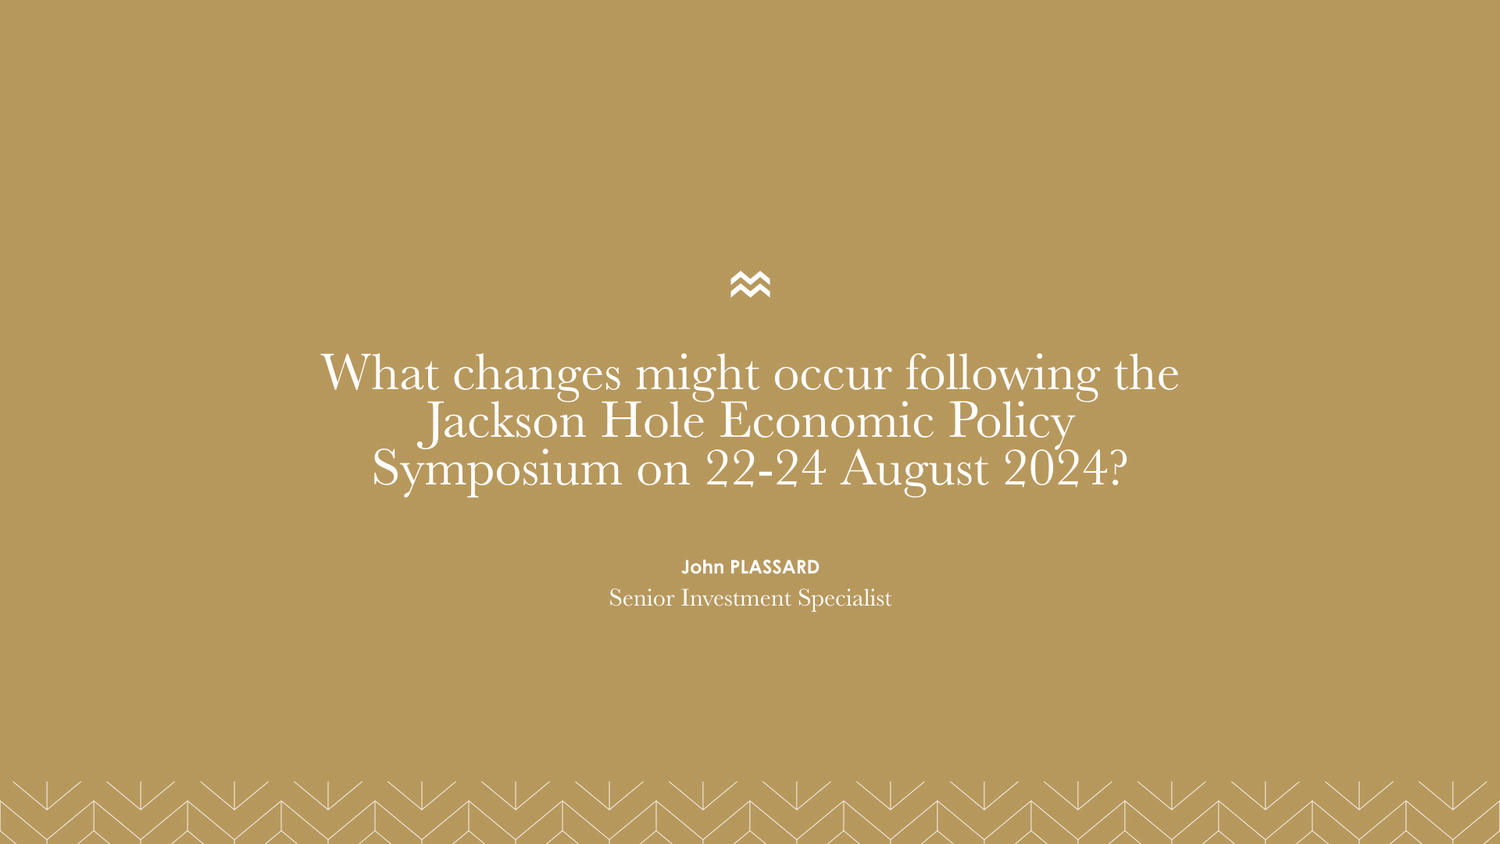 Jackson Hole Economic Policy Symposium 2024